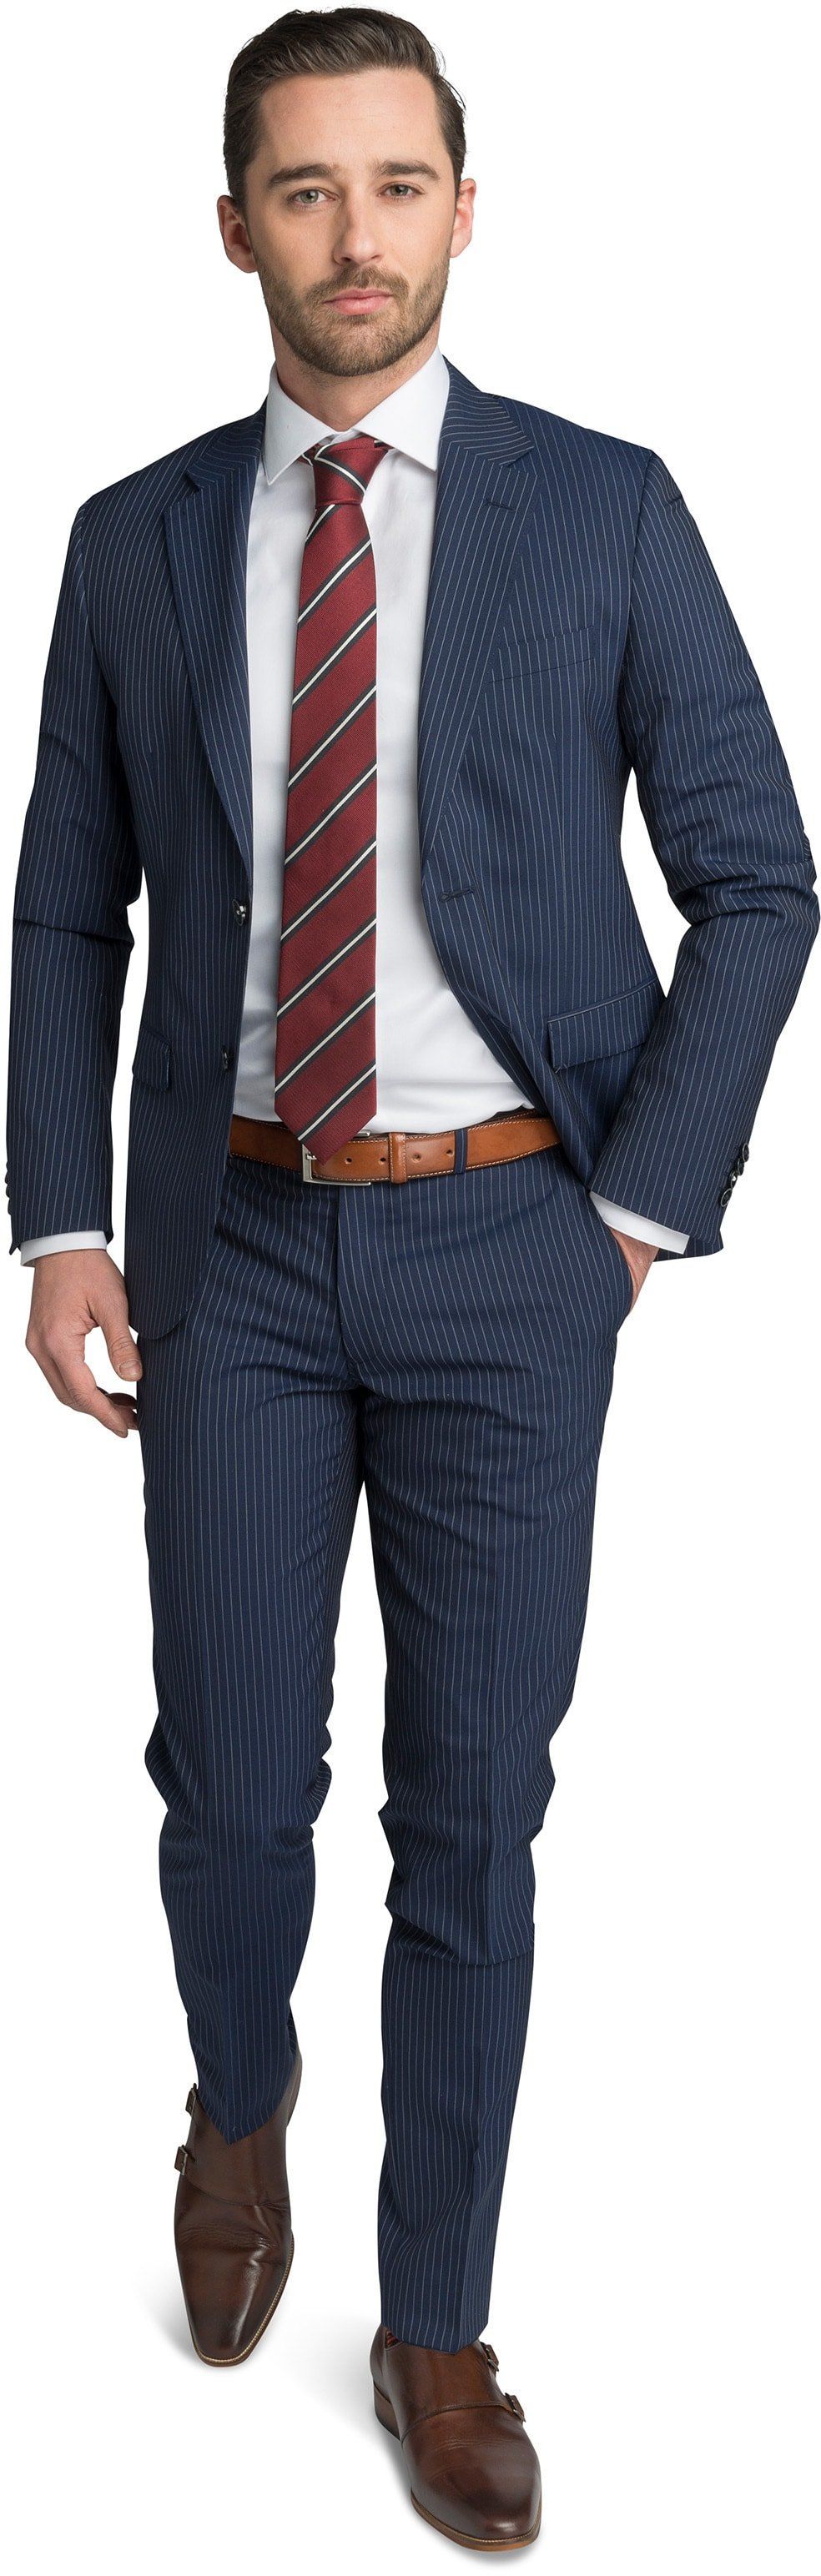 Suitable Suit Strato Stripe Navy Blue size 42-R